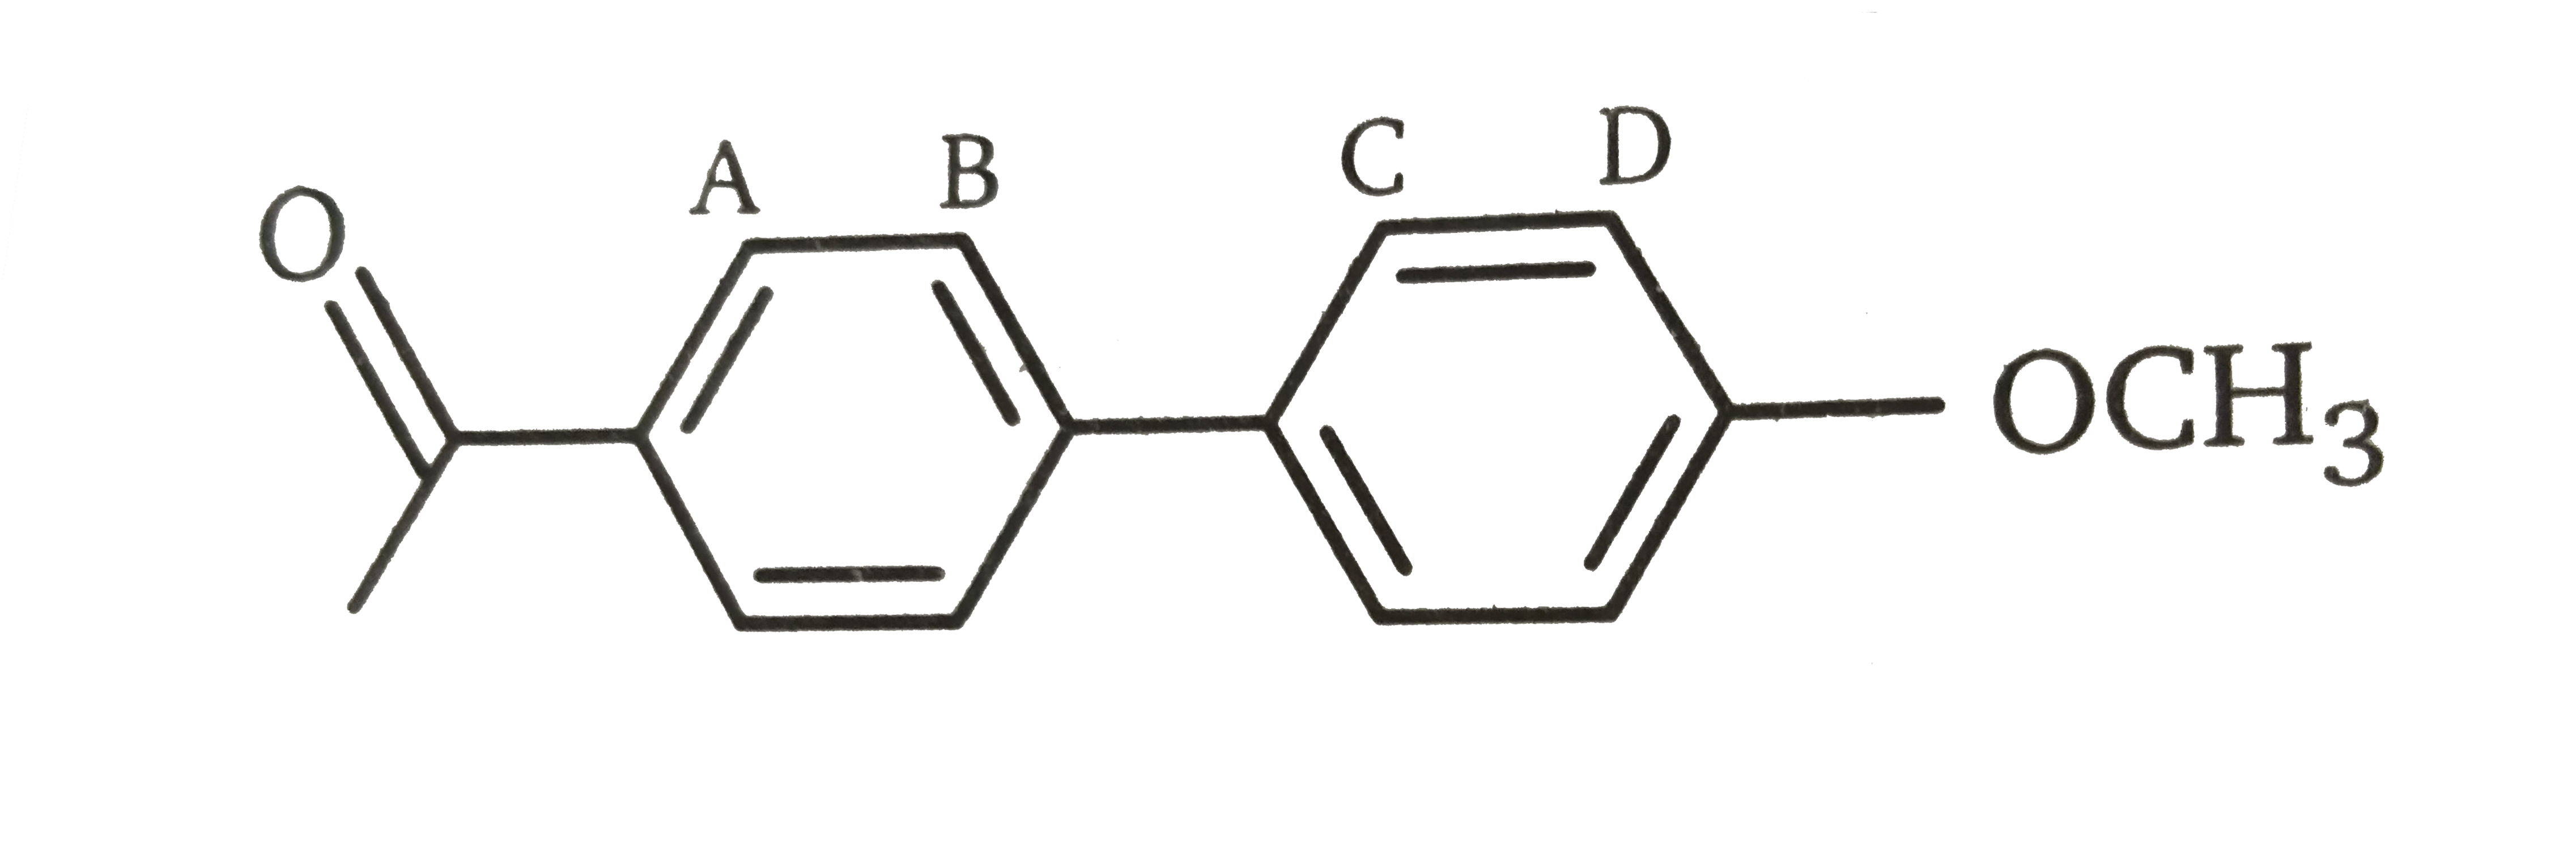 nitronium ion